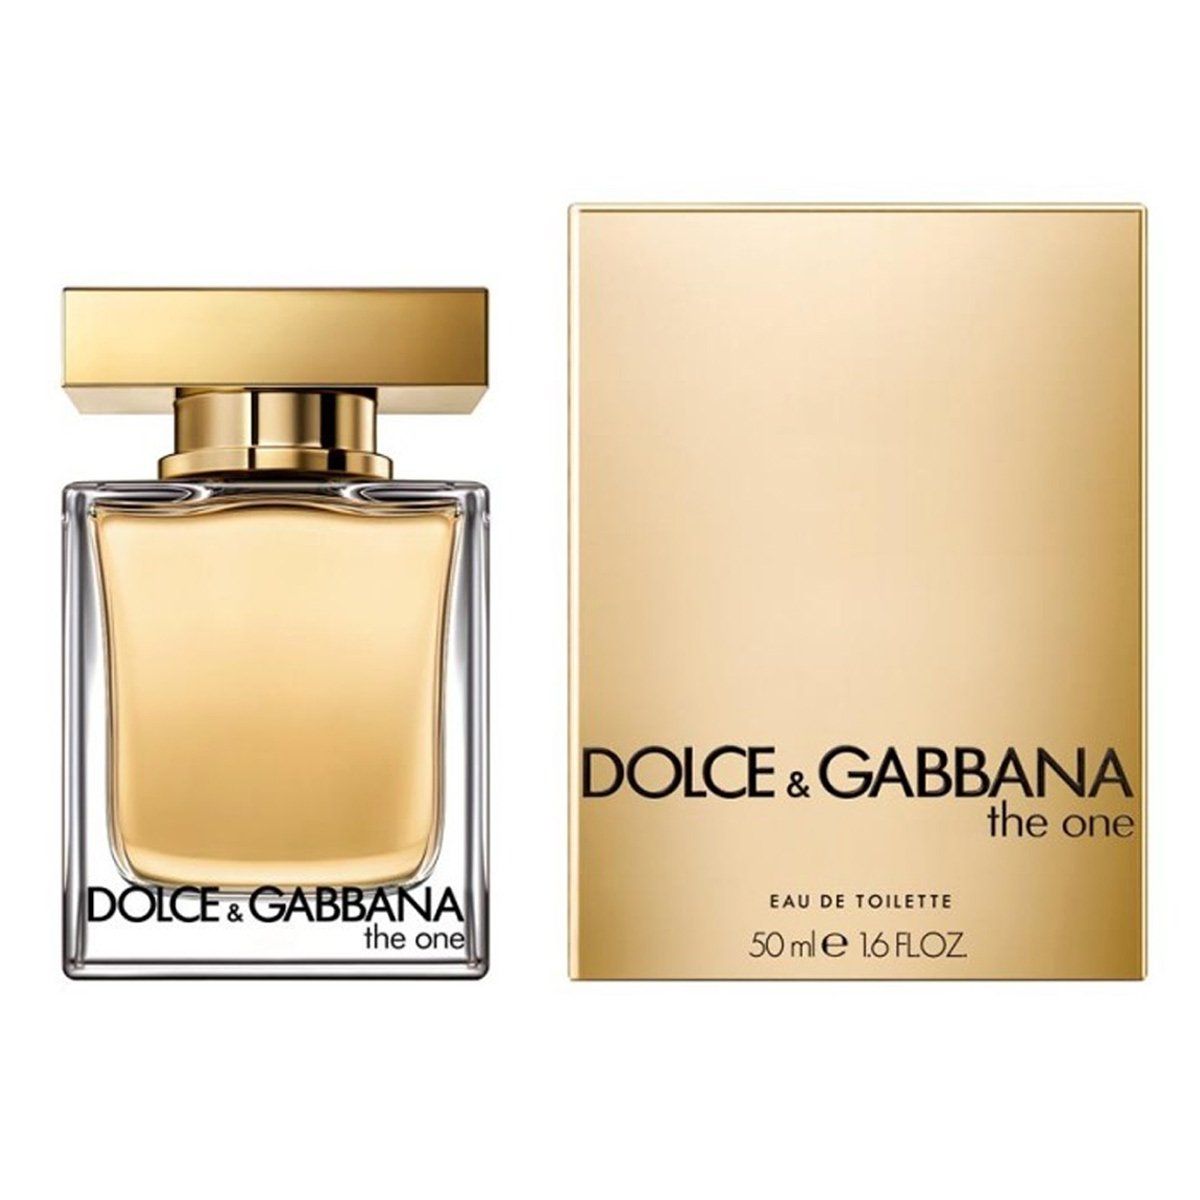  Dolce & Gabbana The One Eau de Toilette for Woman 